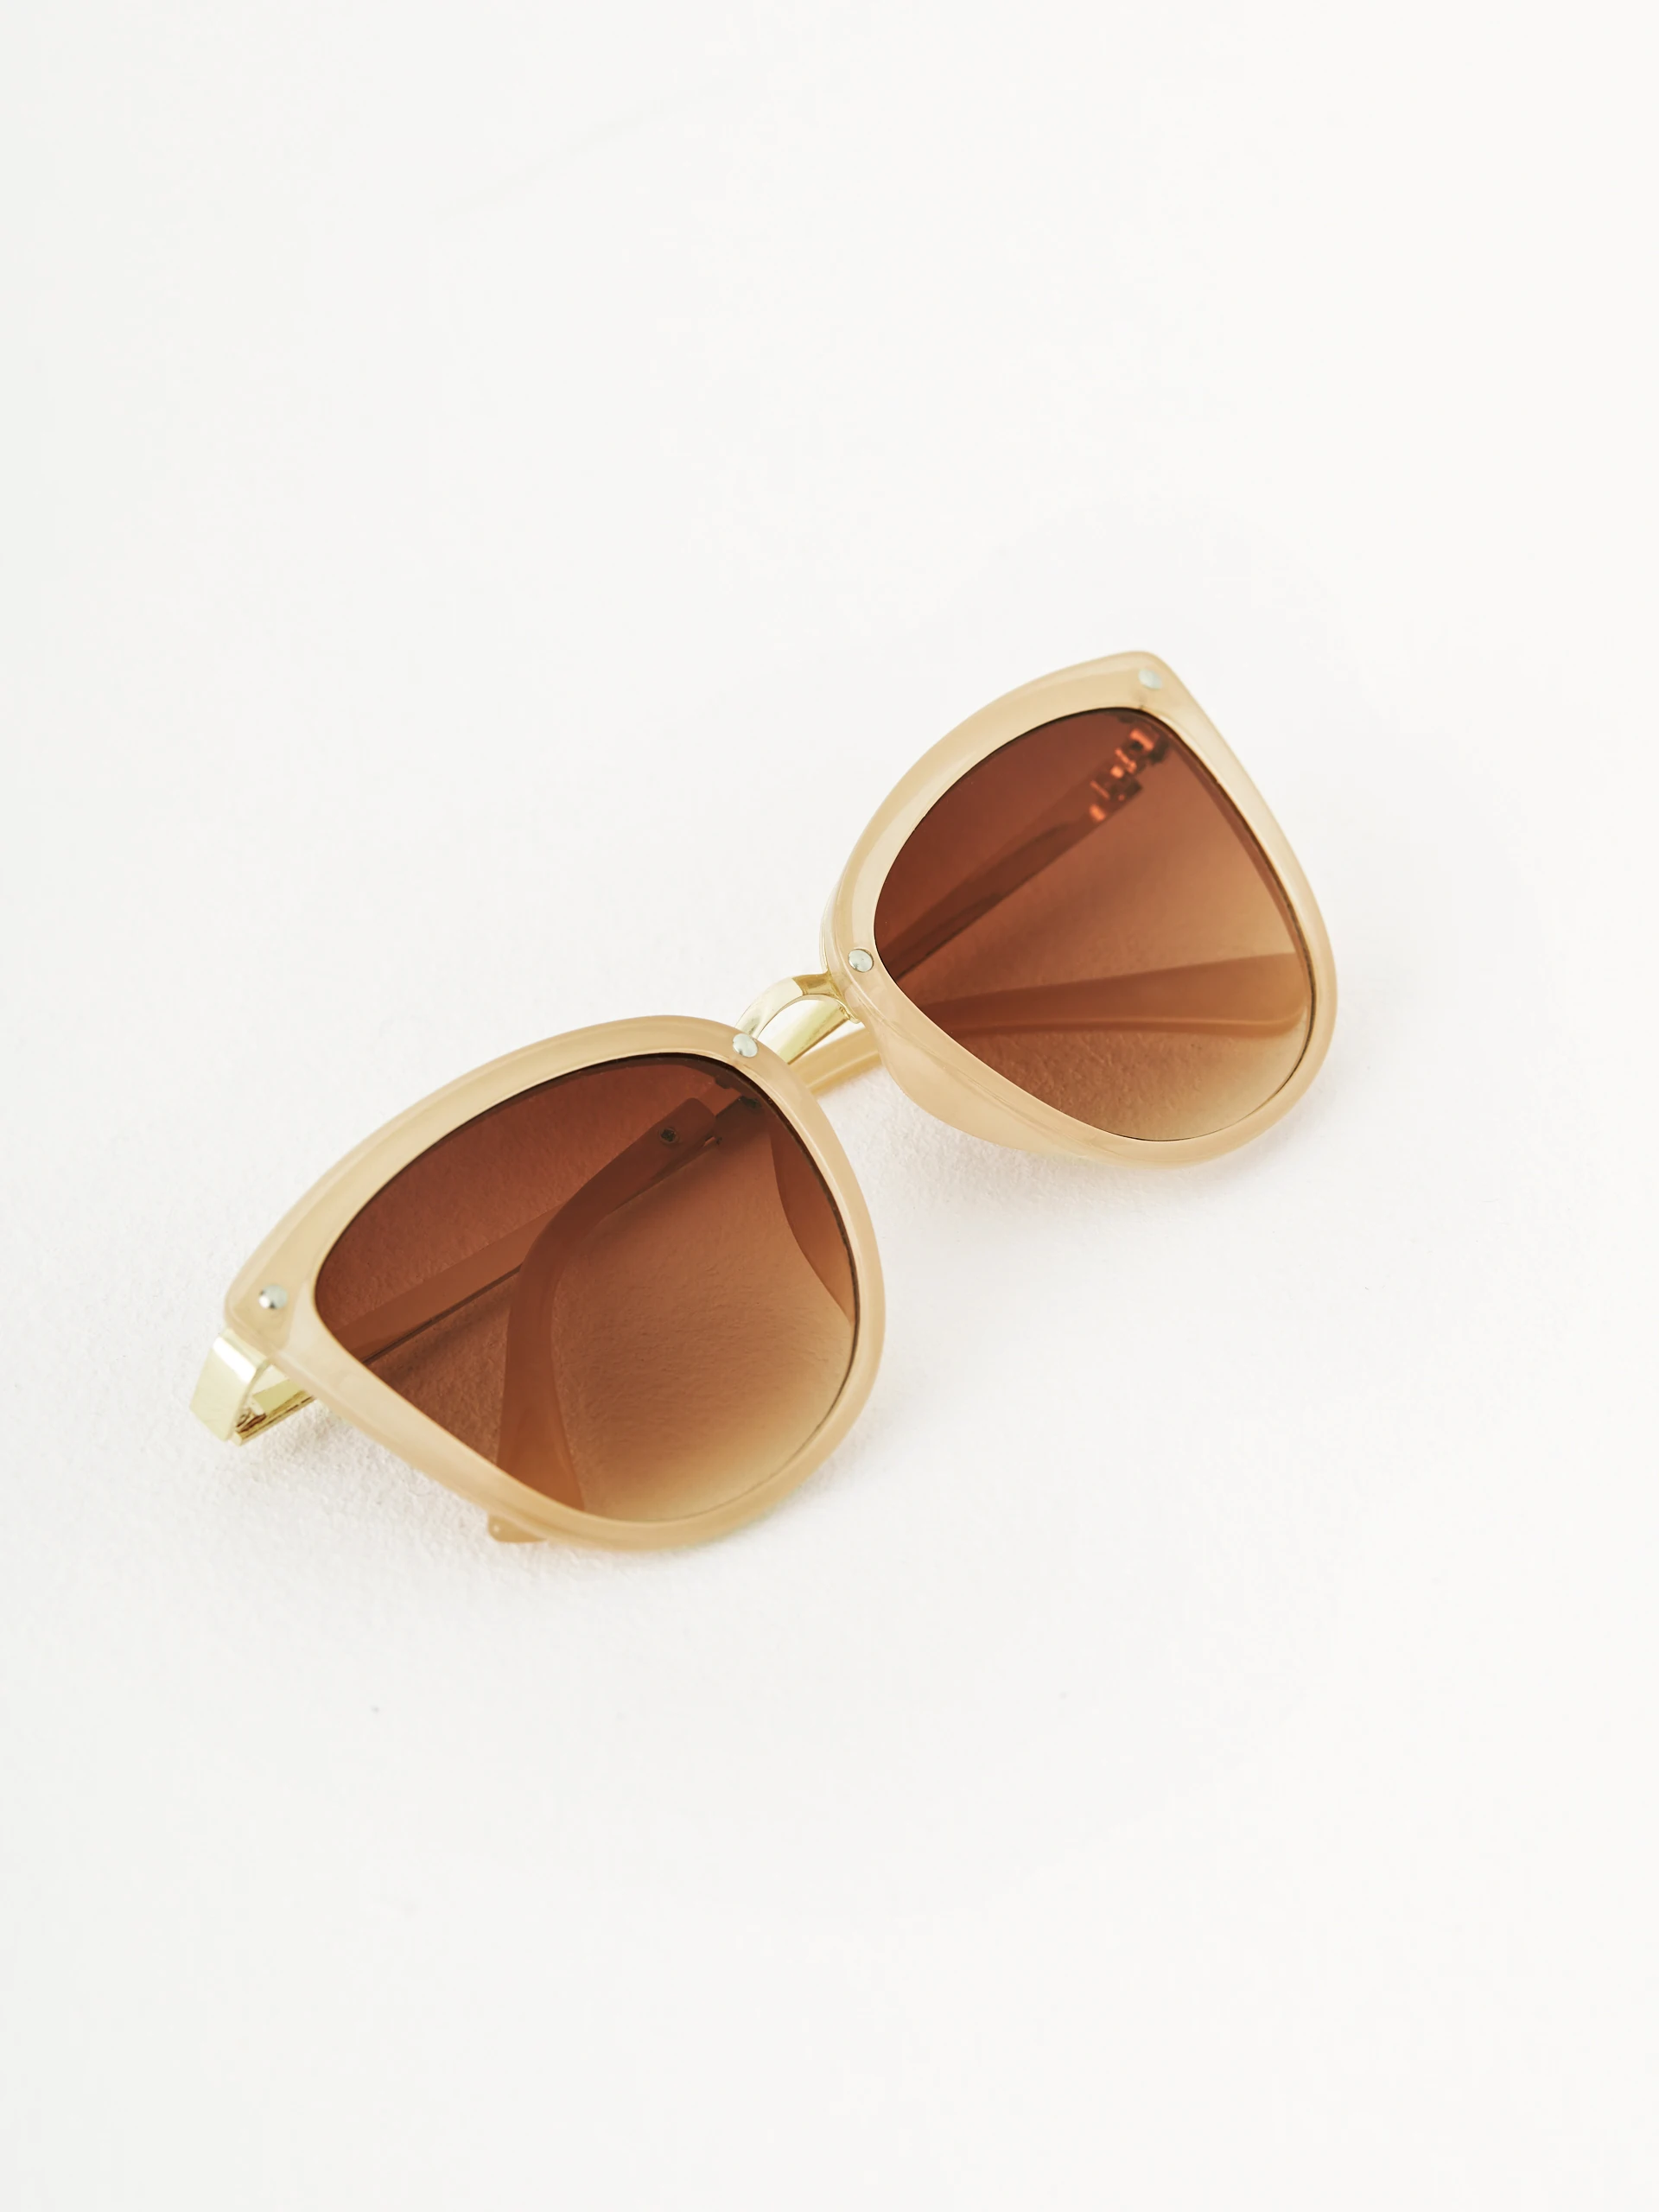 Beige sunglasses in cat-eye shape